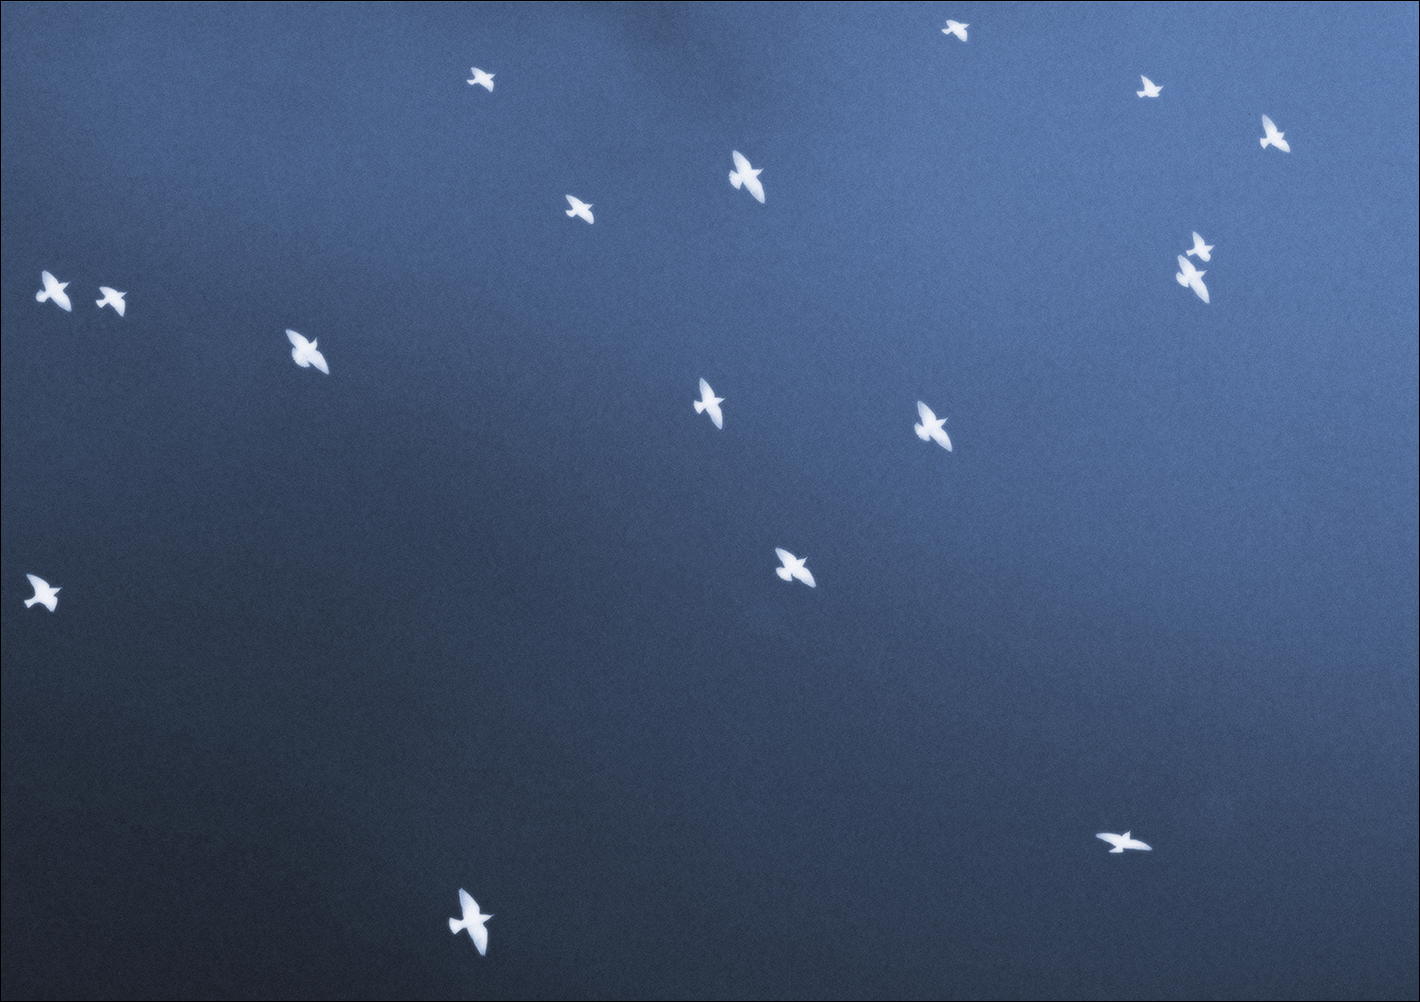 photographie d'oiseaux sur fond bleu, série Aimez-vous l'orage